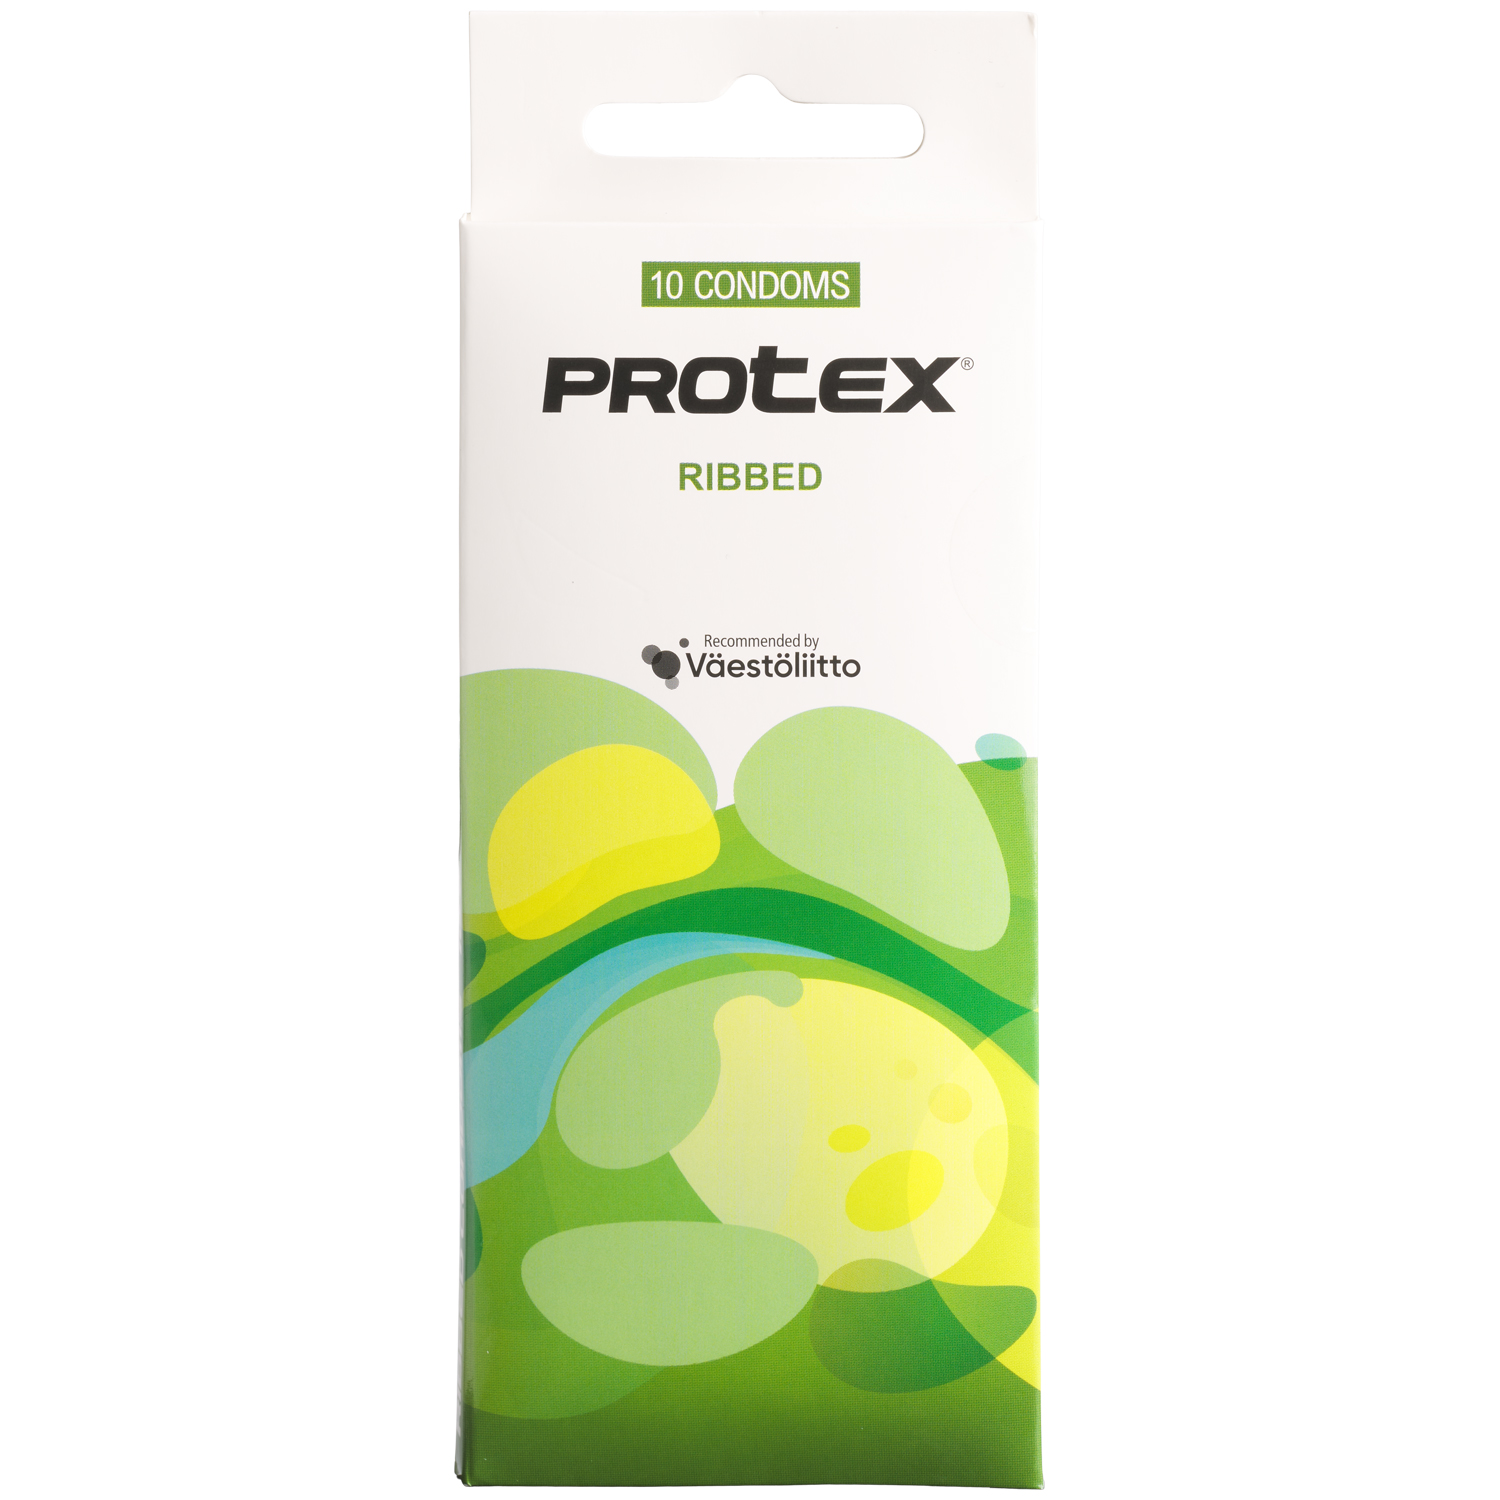 Protex Ribbed Rillede Kondomer 10 stk     - Klar